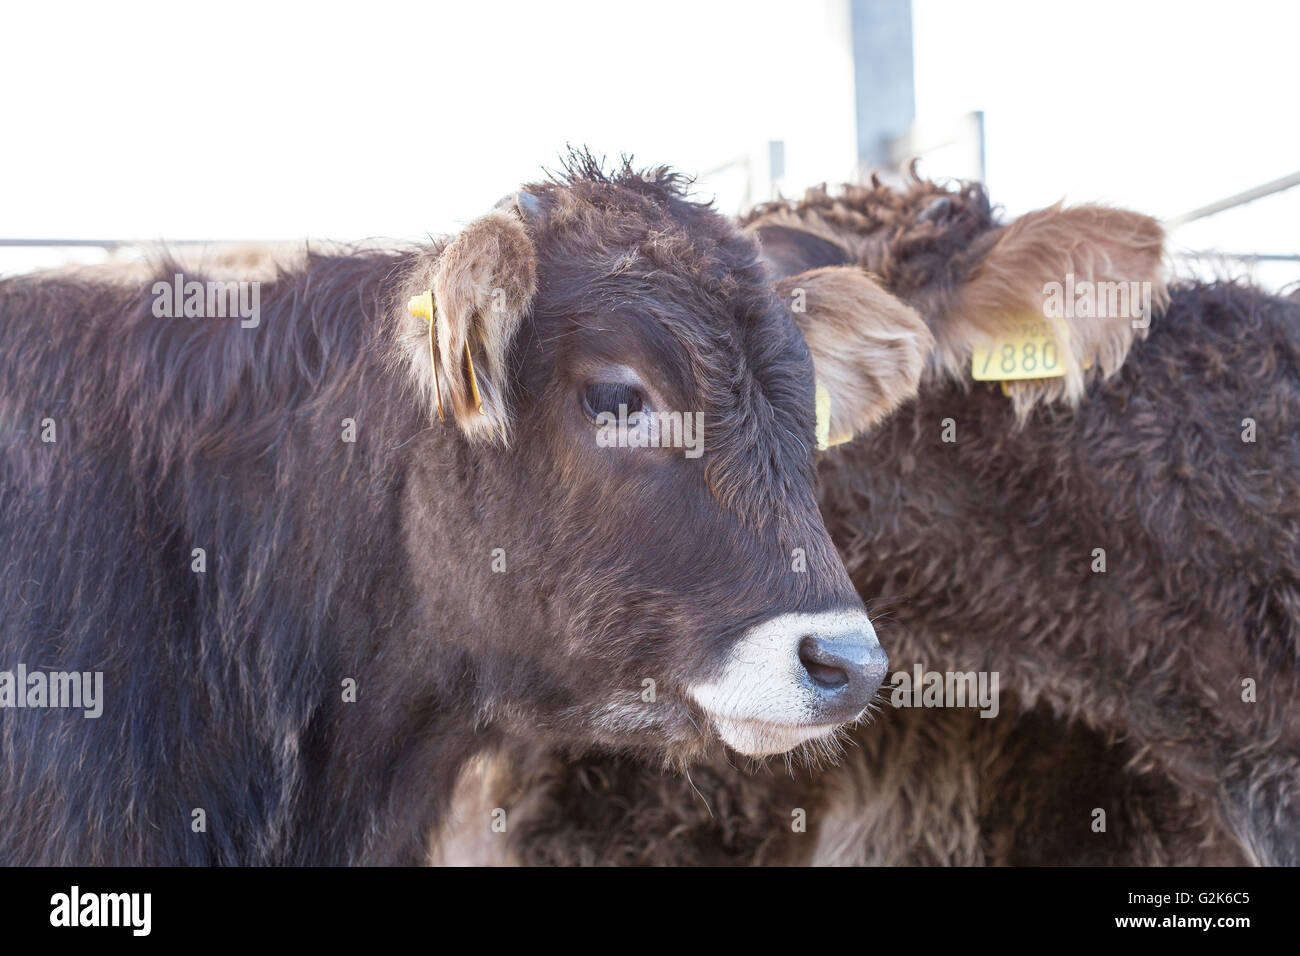 Junge Kuh, Bos Taurus, in den Zaun mit der Herde Stockfoto